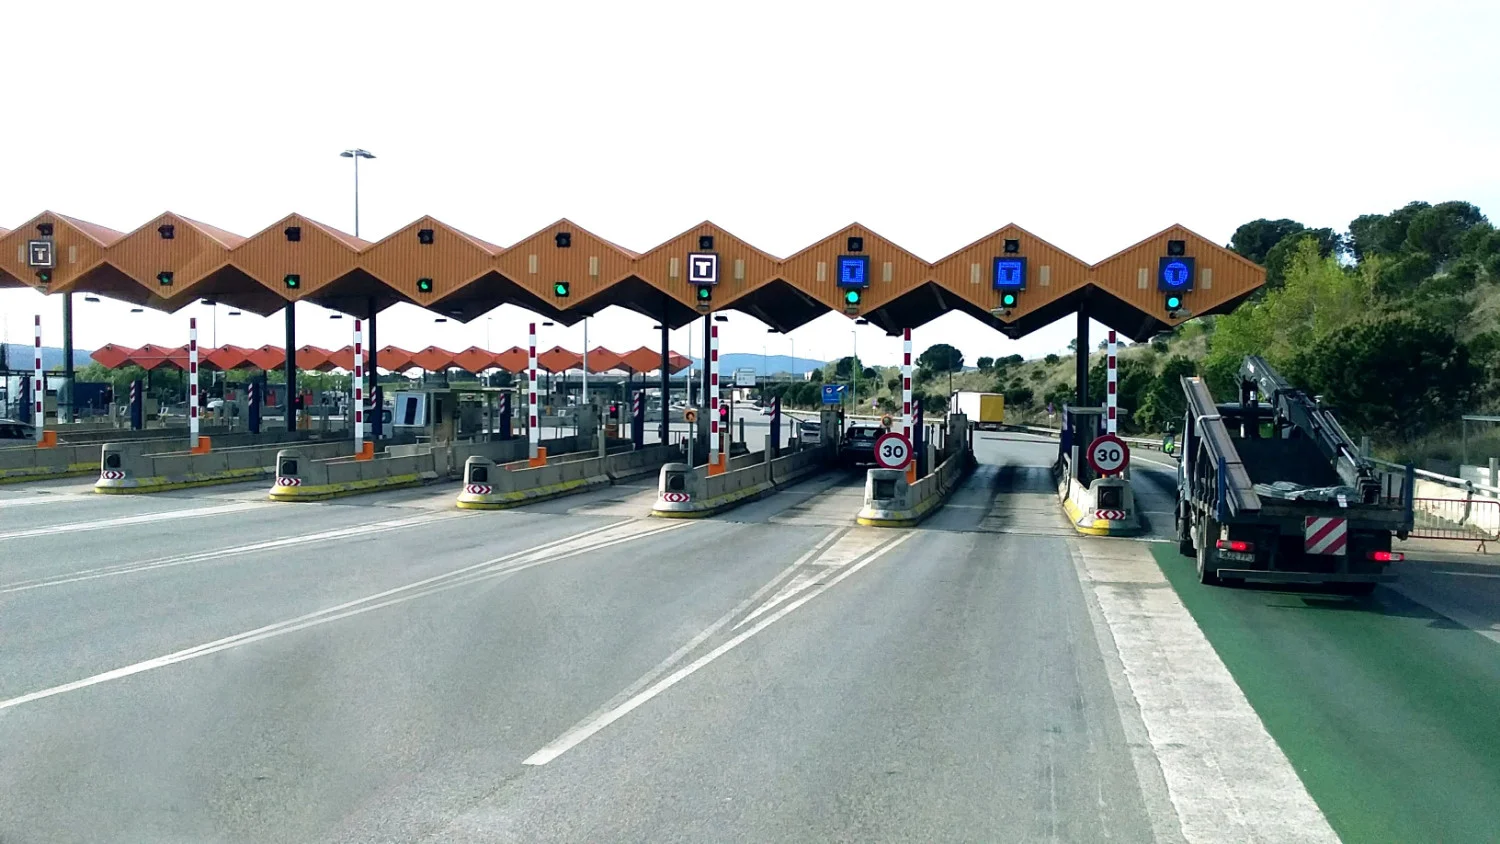  E-vignet - verplicht voor het gebruik van de A4 en andere snelwegen in Slovenië